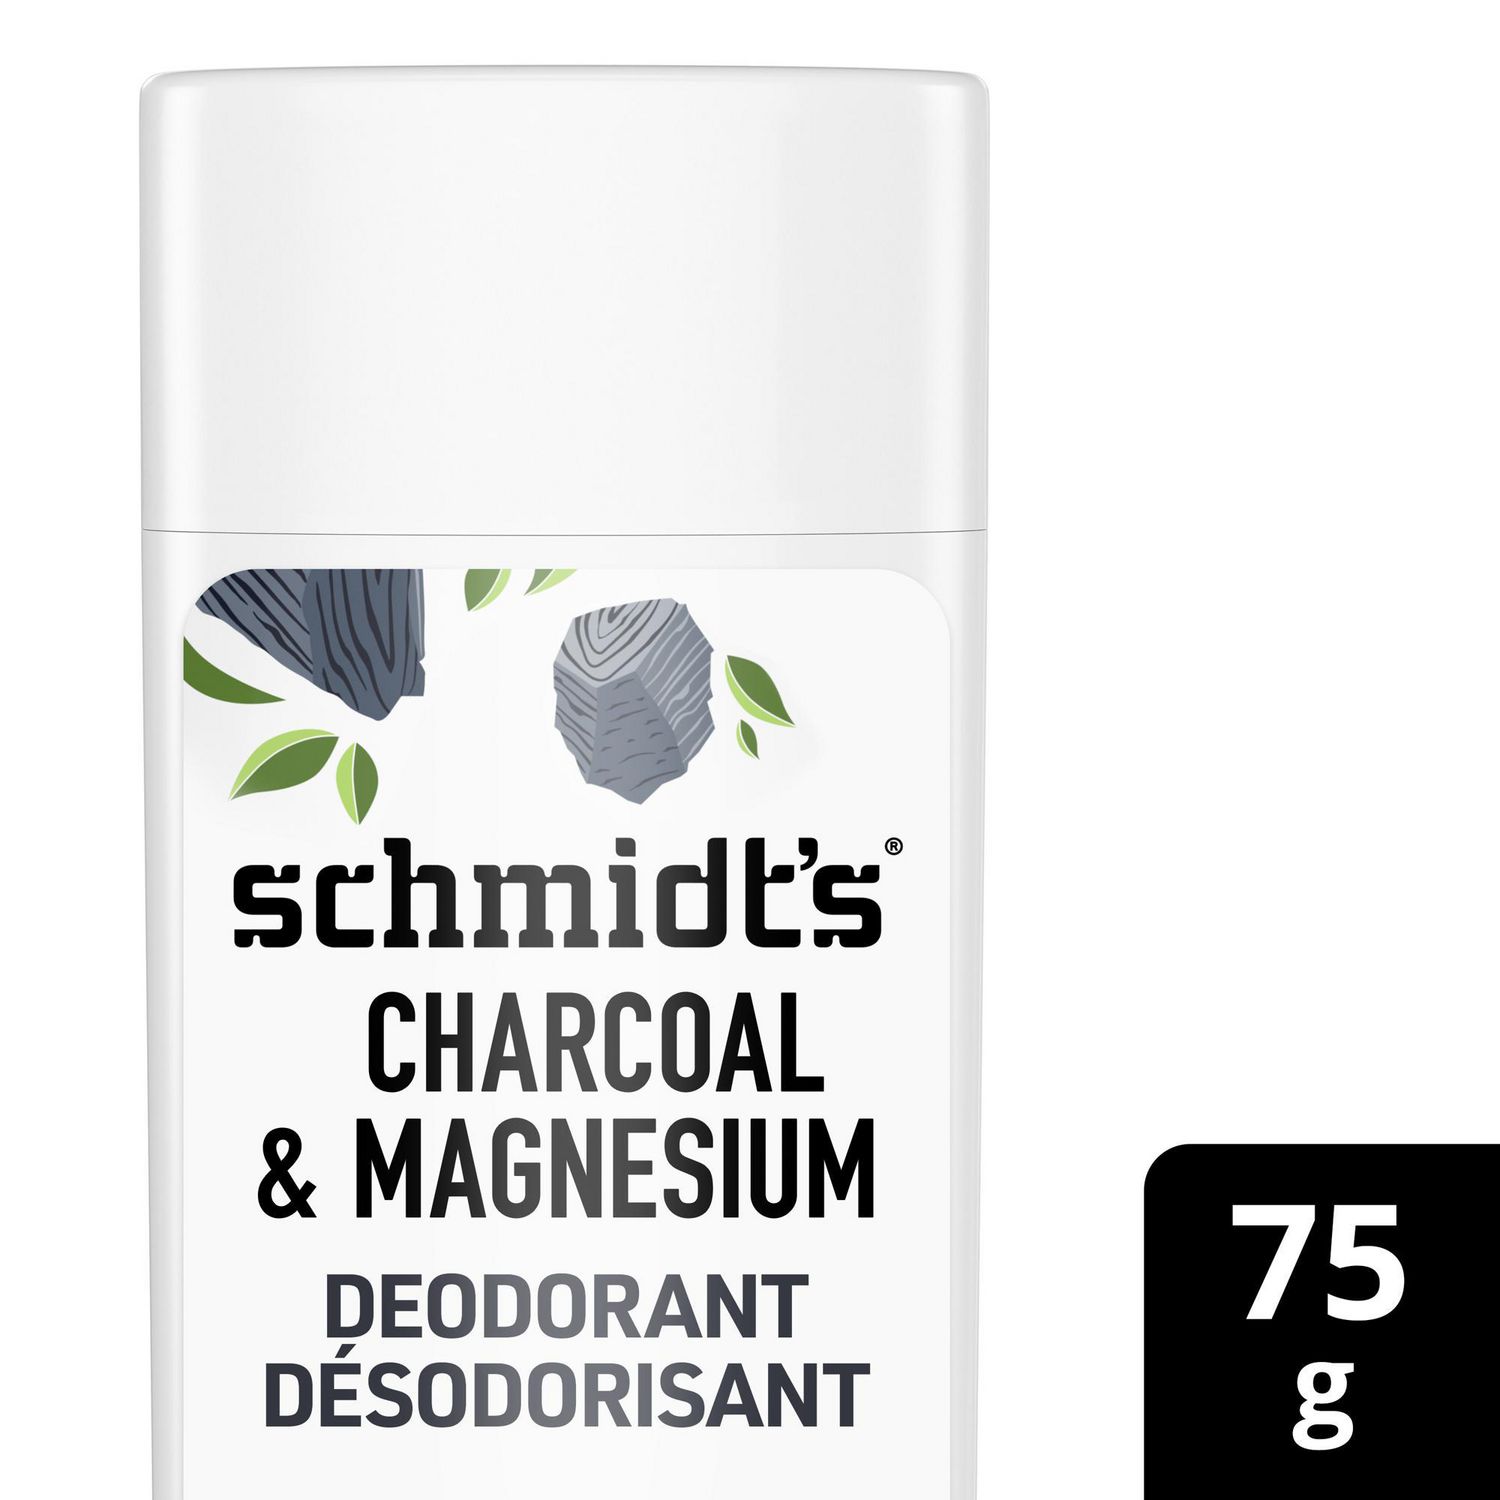 Schmidt's Charcoal & Magnesium Natural Deodorant Stick Walmart Canada